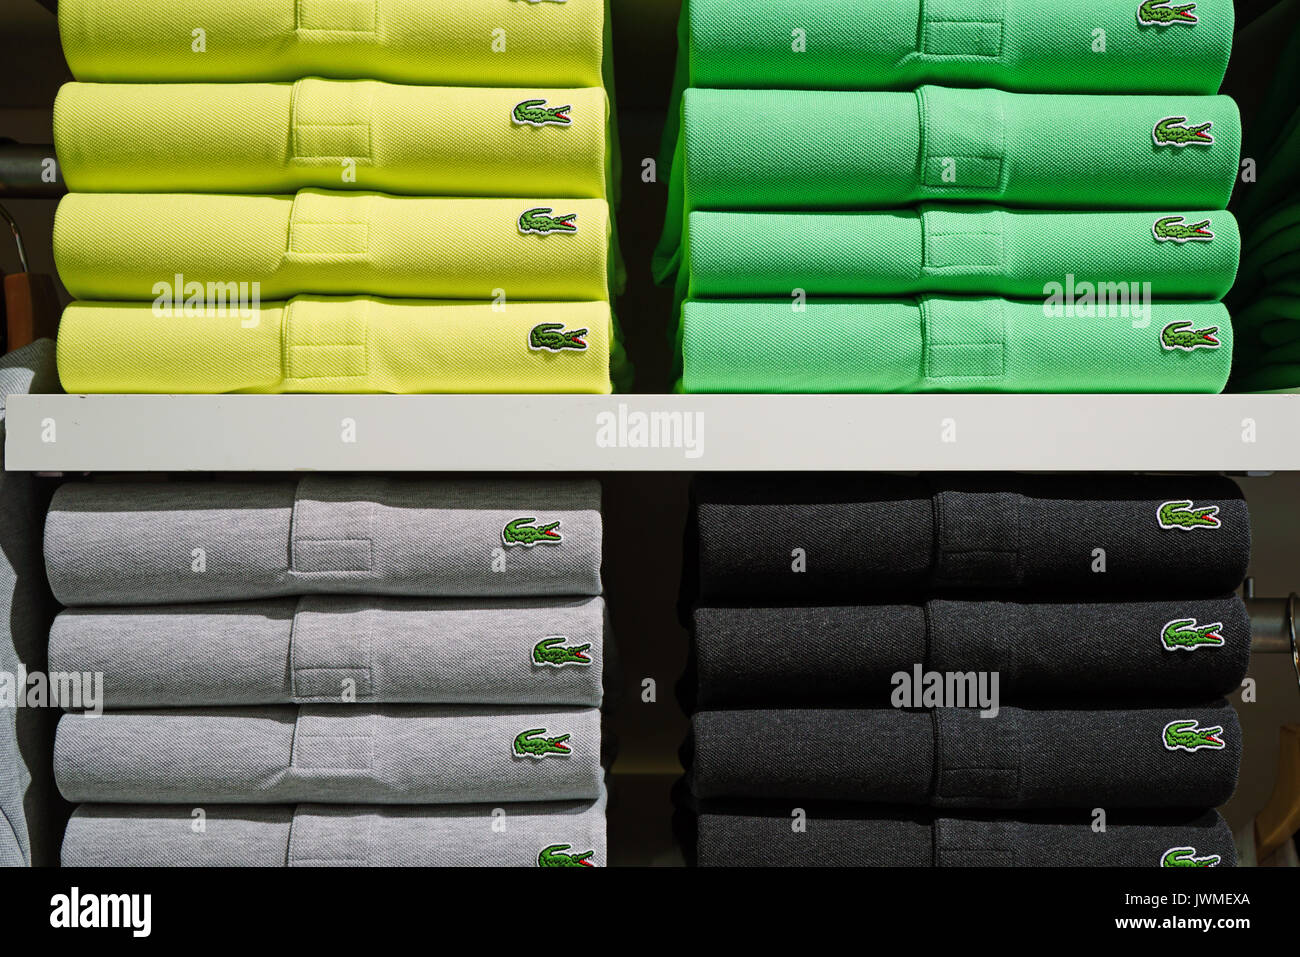 Samarbejdsvillig Stat ophavsret Lacoste shirt hi-res stock photography and images - Alamy